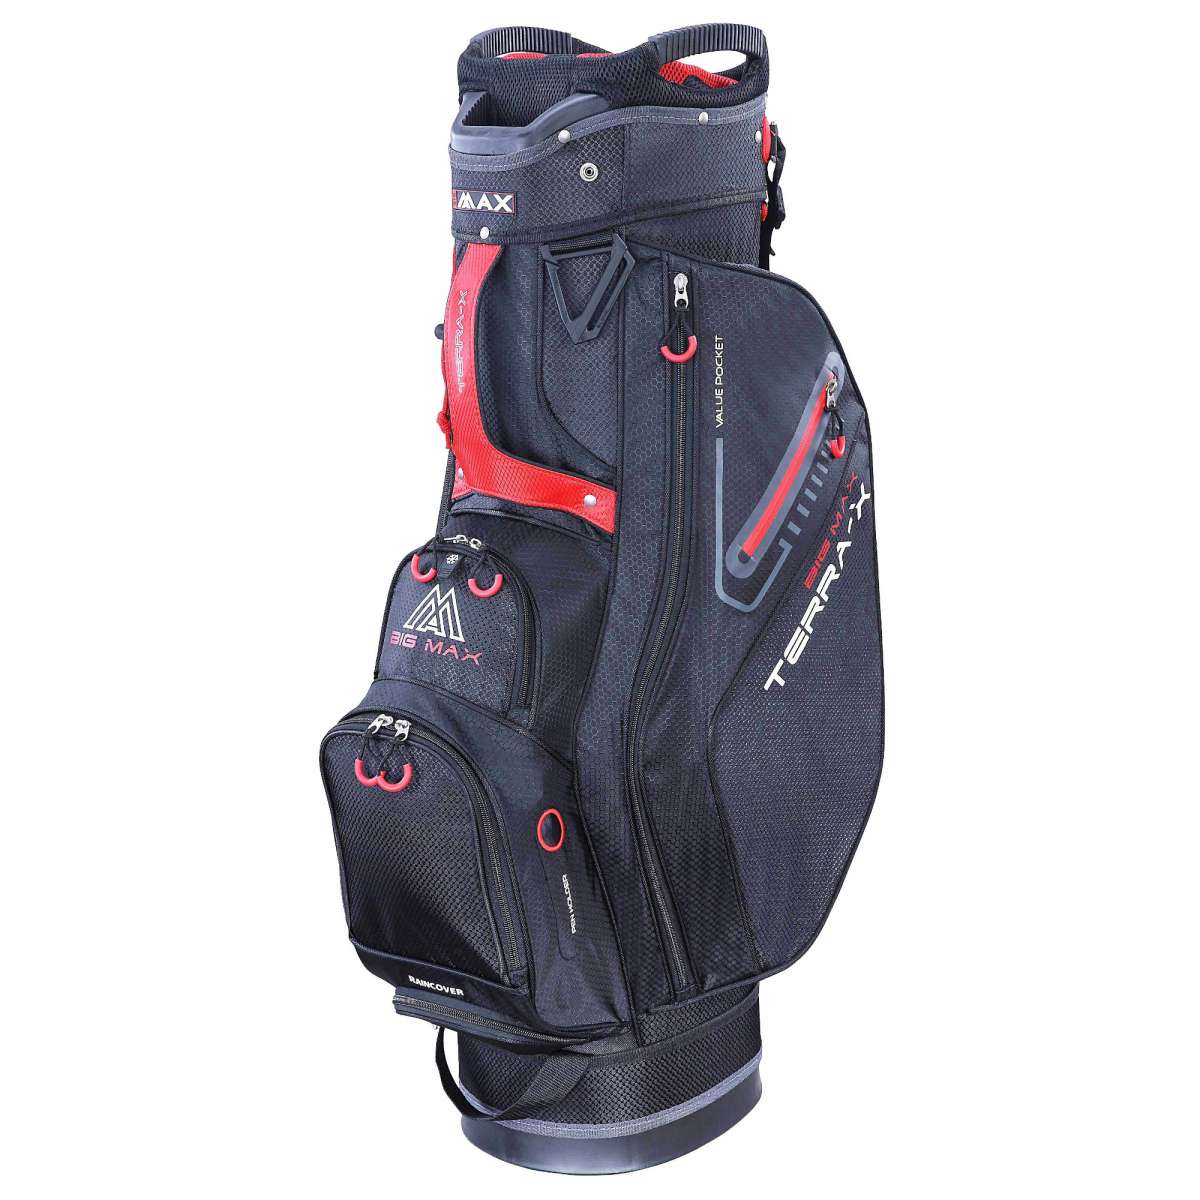 Big Max Terra X Cartbag / Golfbag günstig kaufen Golflädchen